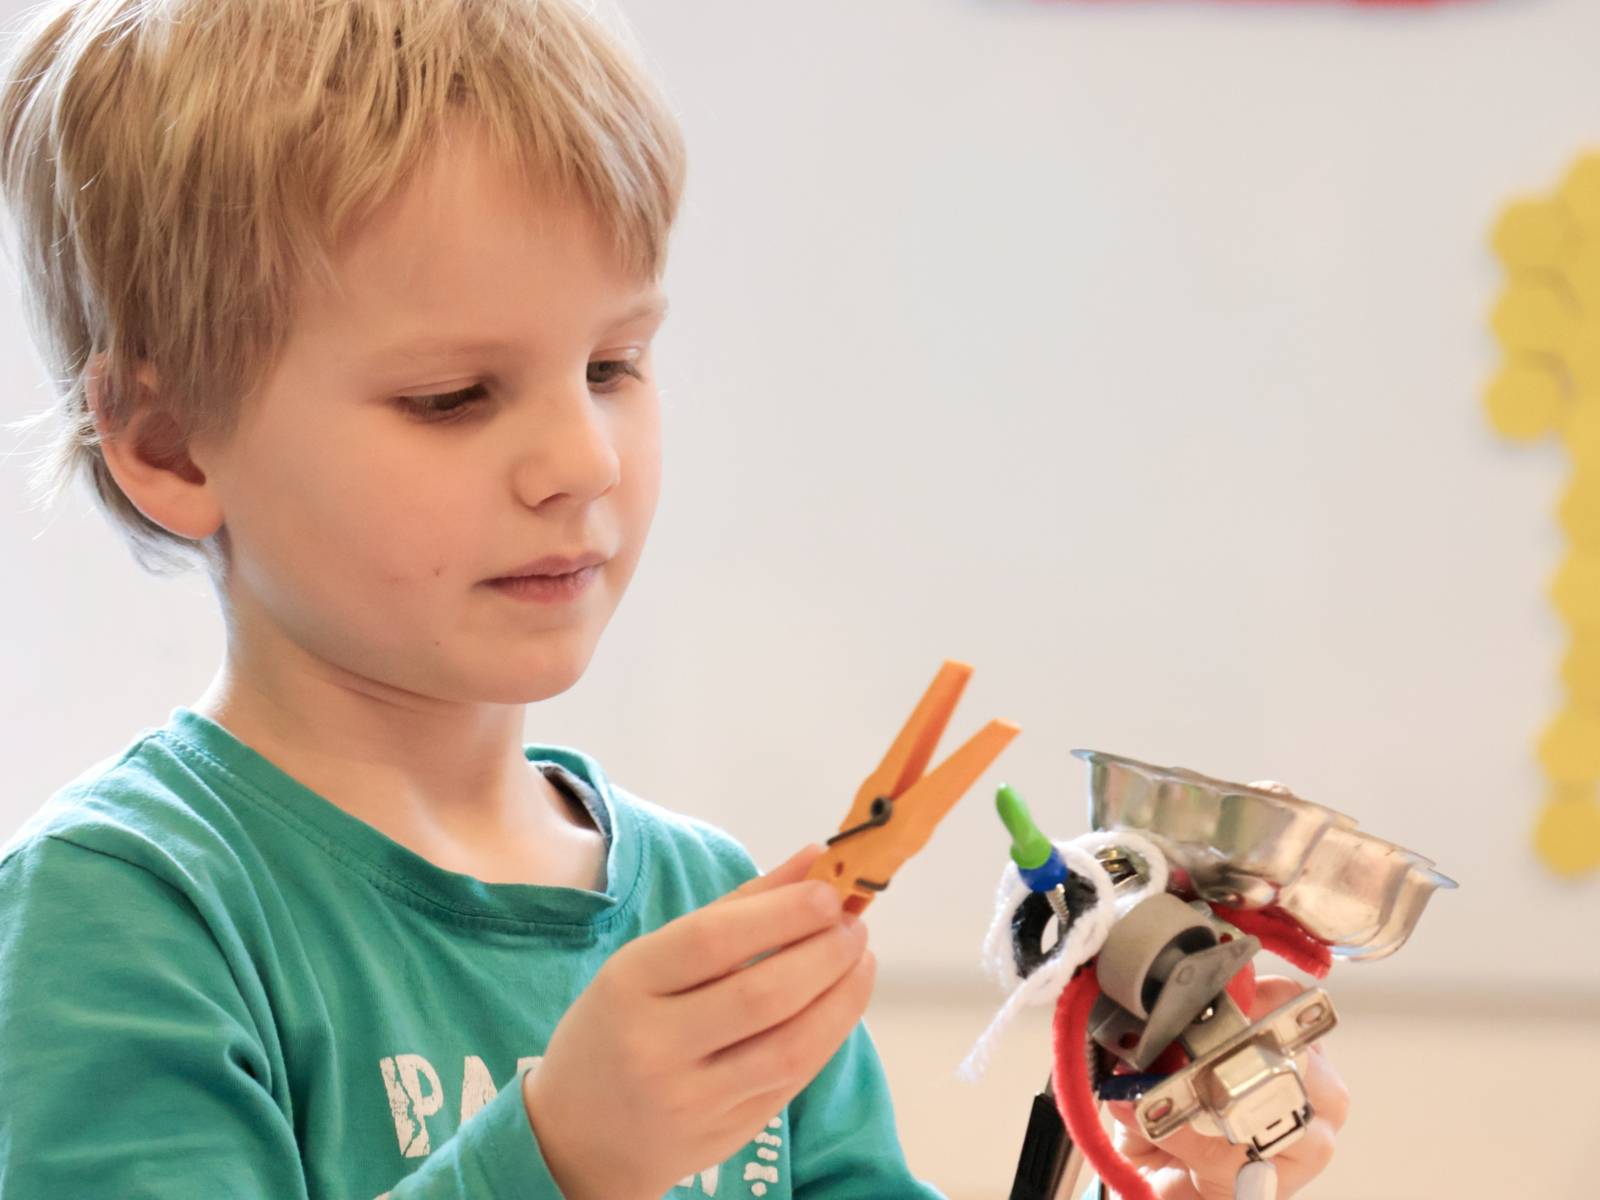 Ein Junge hält in der linken Hand einen Magneten. An diesem Magneten halten bereits verschiedene Gegenstände, zum Beispiel ein Spielzeug mit Metallfeder, eine Rolle für Möbel, ein Pfeifenreiniger und ein Möbelscharnier. In der rechten Hand hält der Junge eine Wäscheklammer.